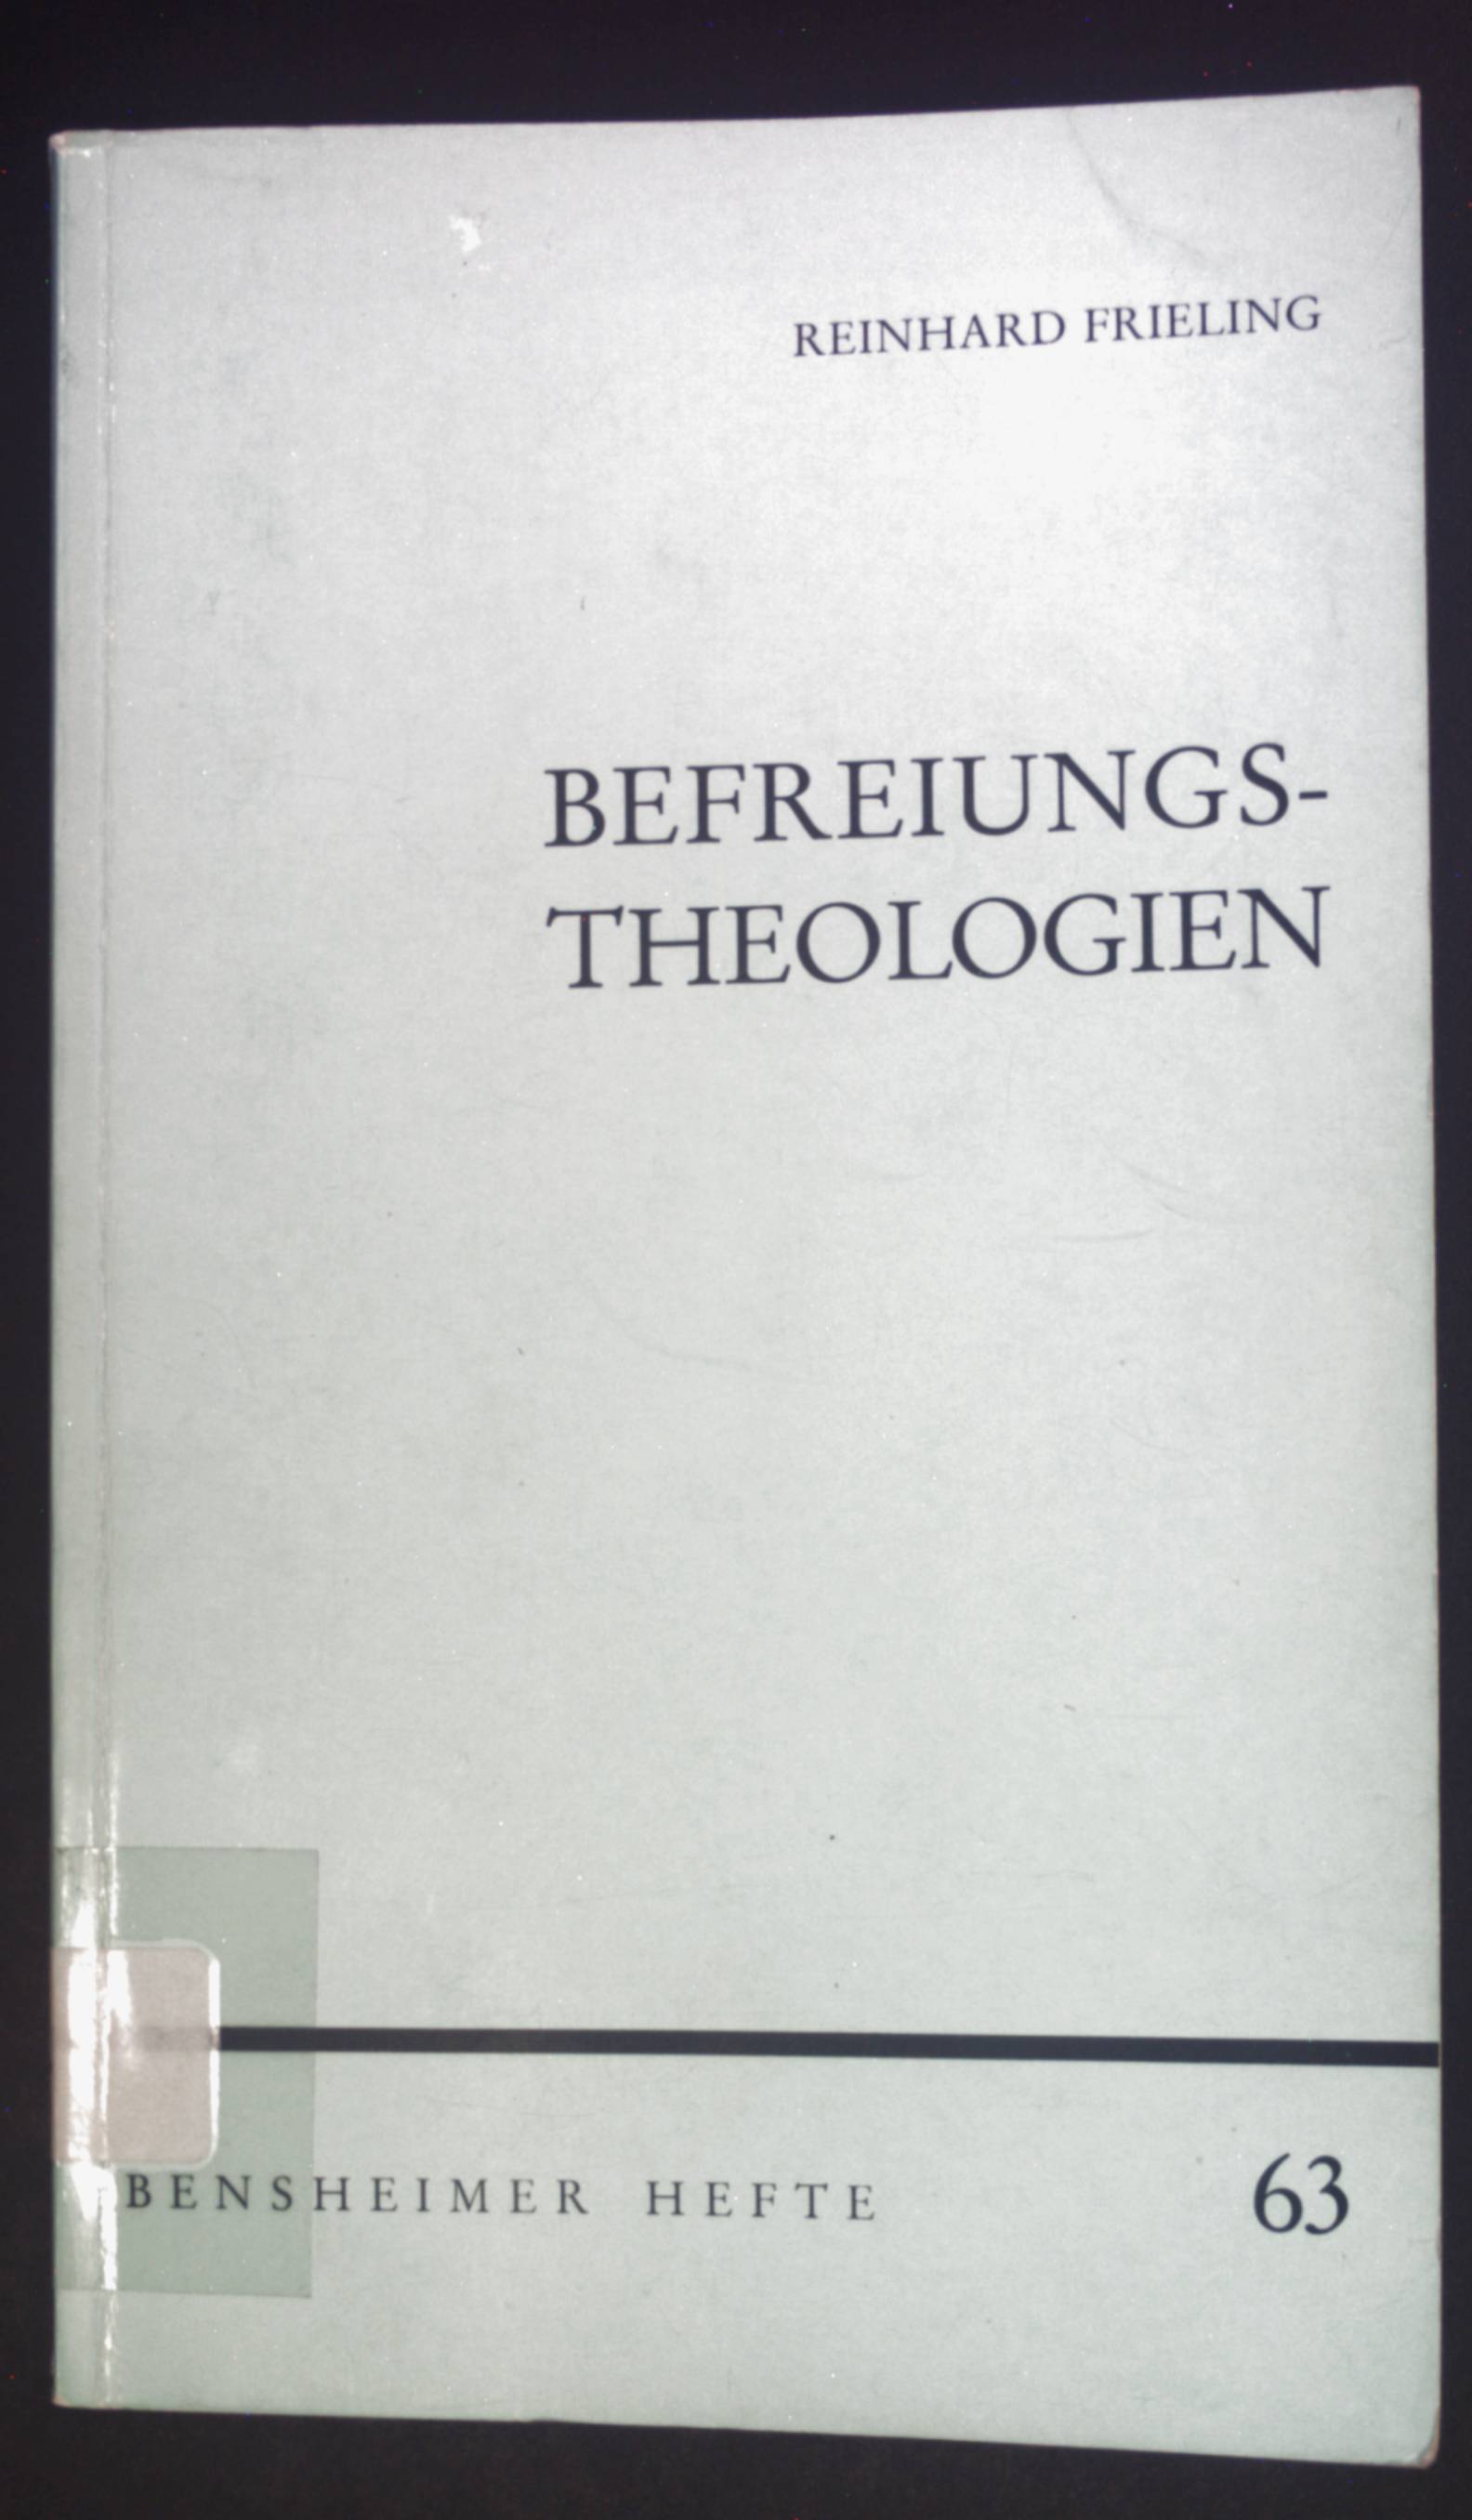 Befreiungstheologien : Studien zur Theologie in Lateinamerika. Bensheimer Hefte ; H. 63 - Frieling, Reinhard